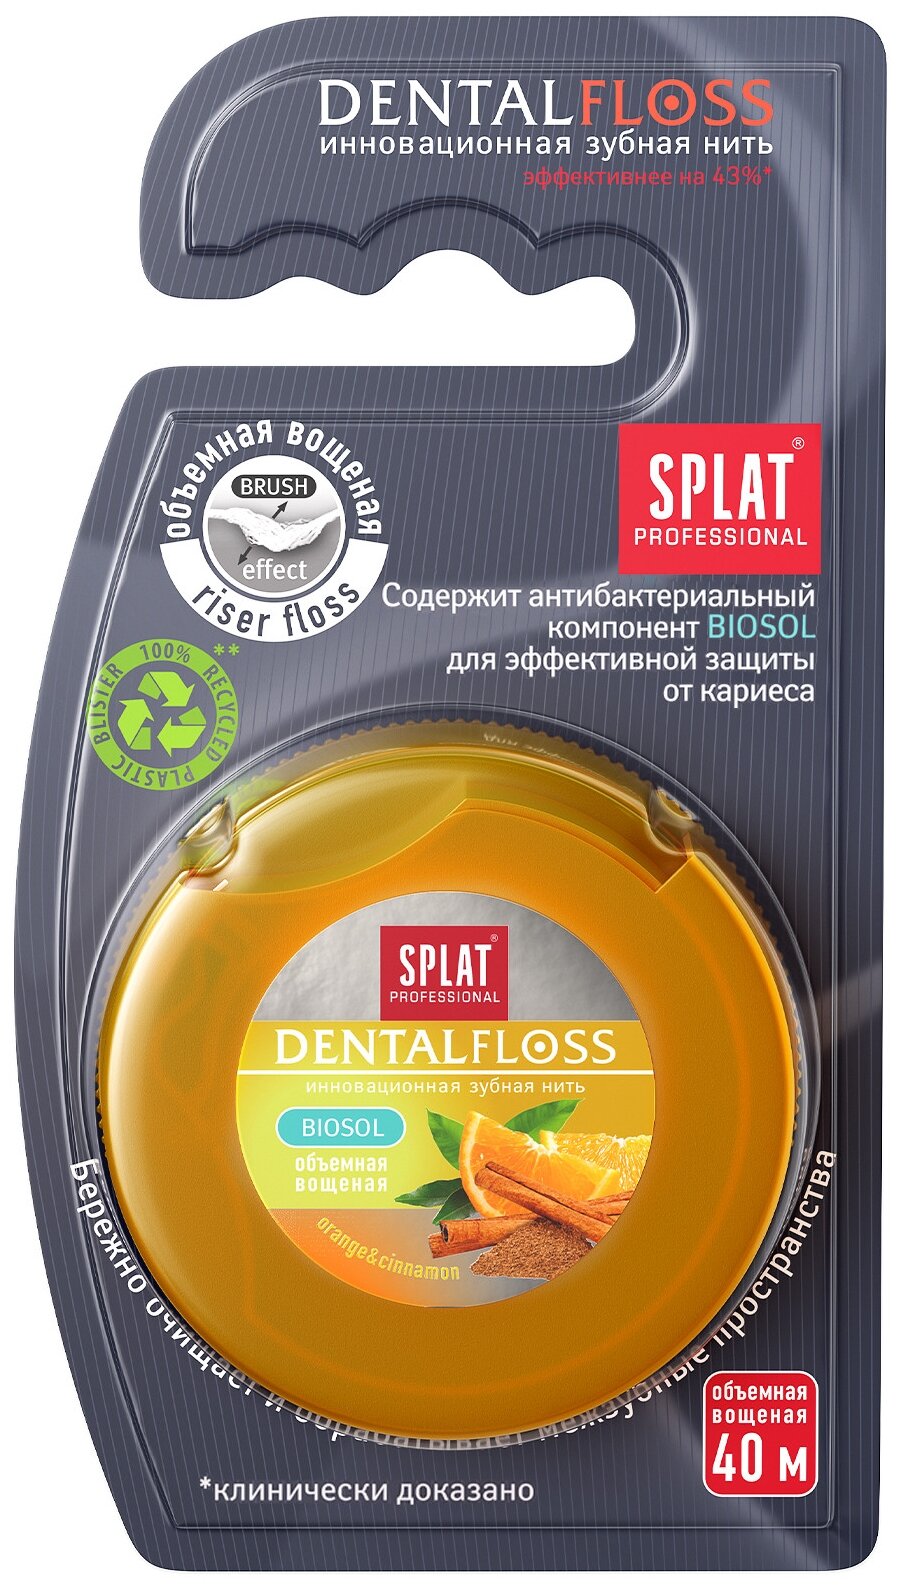 SPLAT зубная нить Dentalfloss (апельсин и корица)